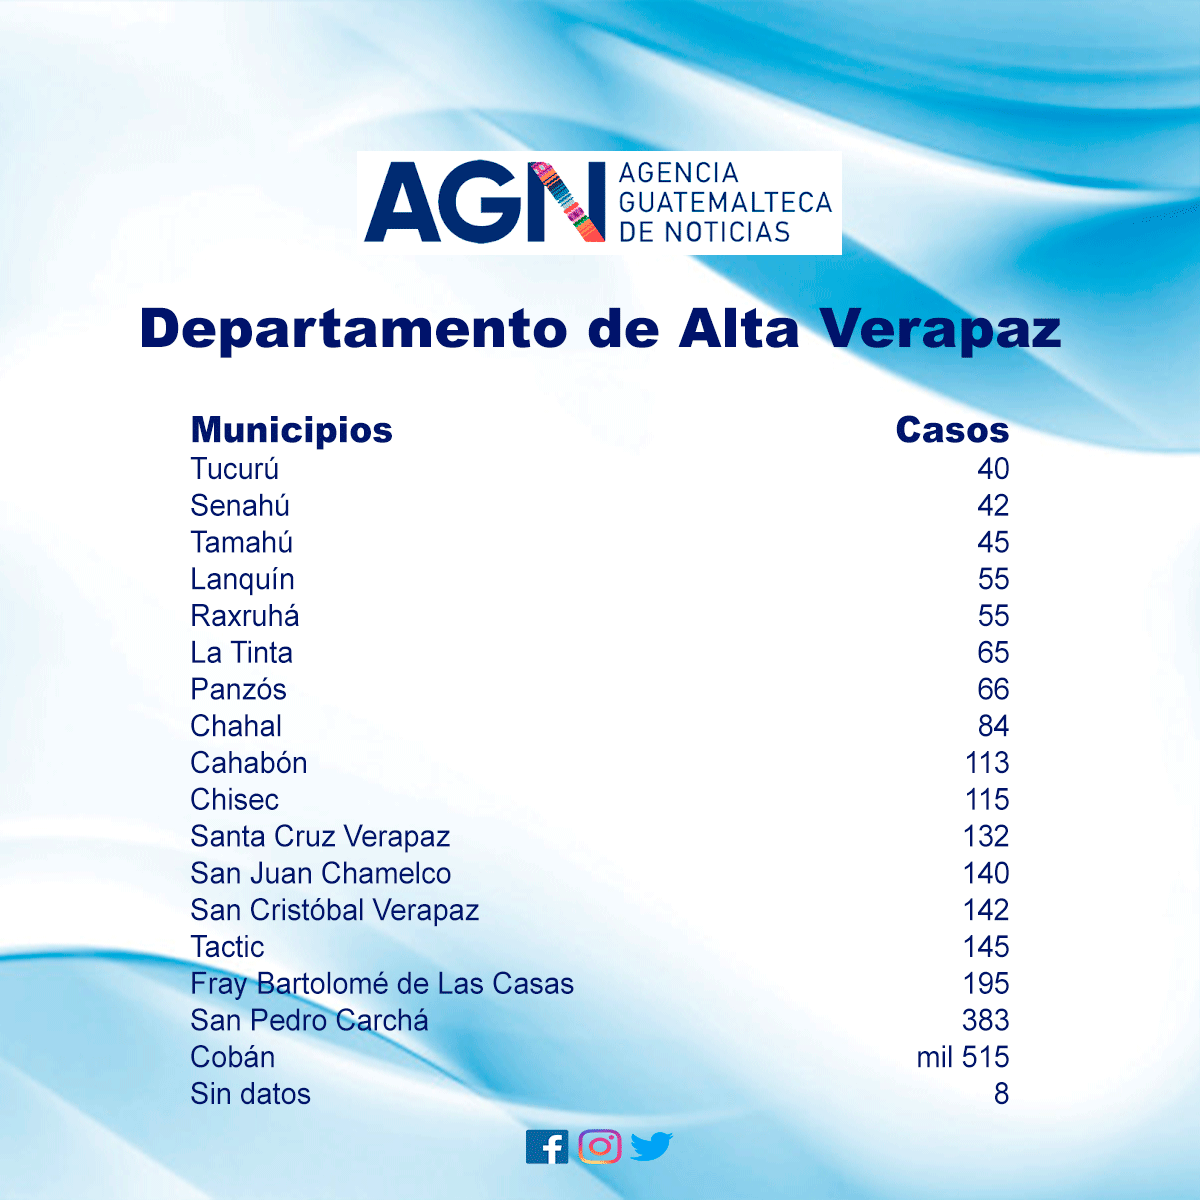 Casos registrados en los municipios del departamento de Alta Verapaz.